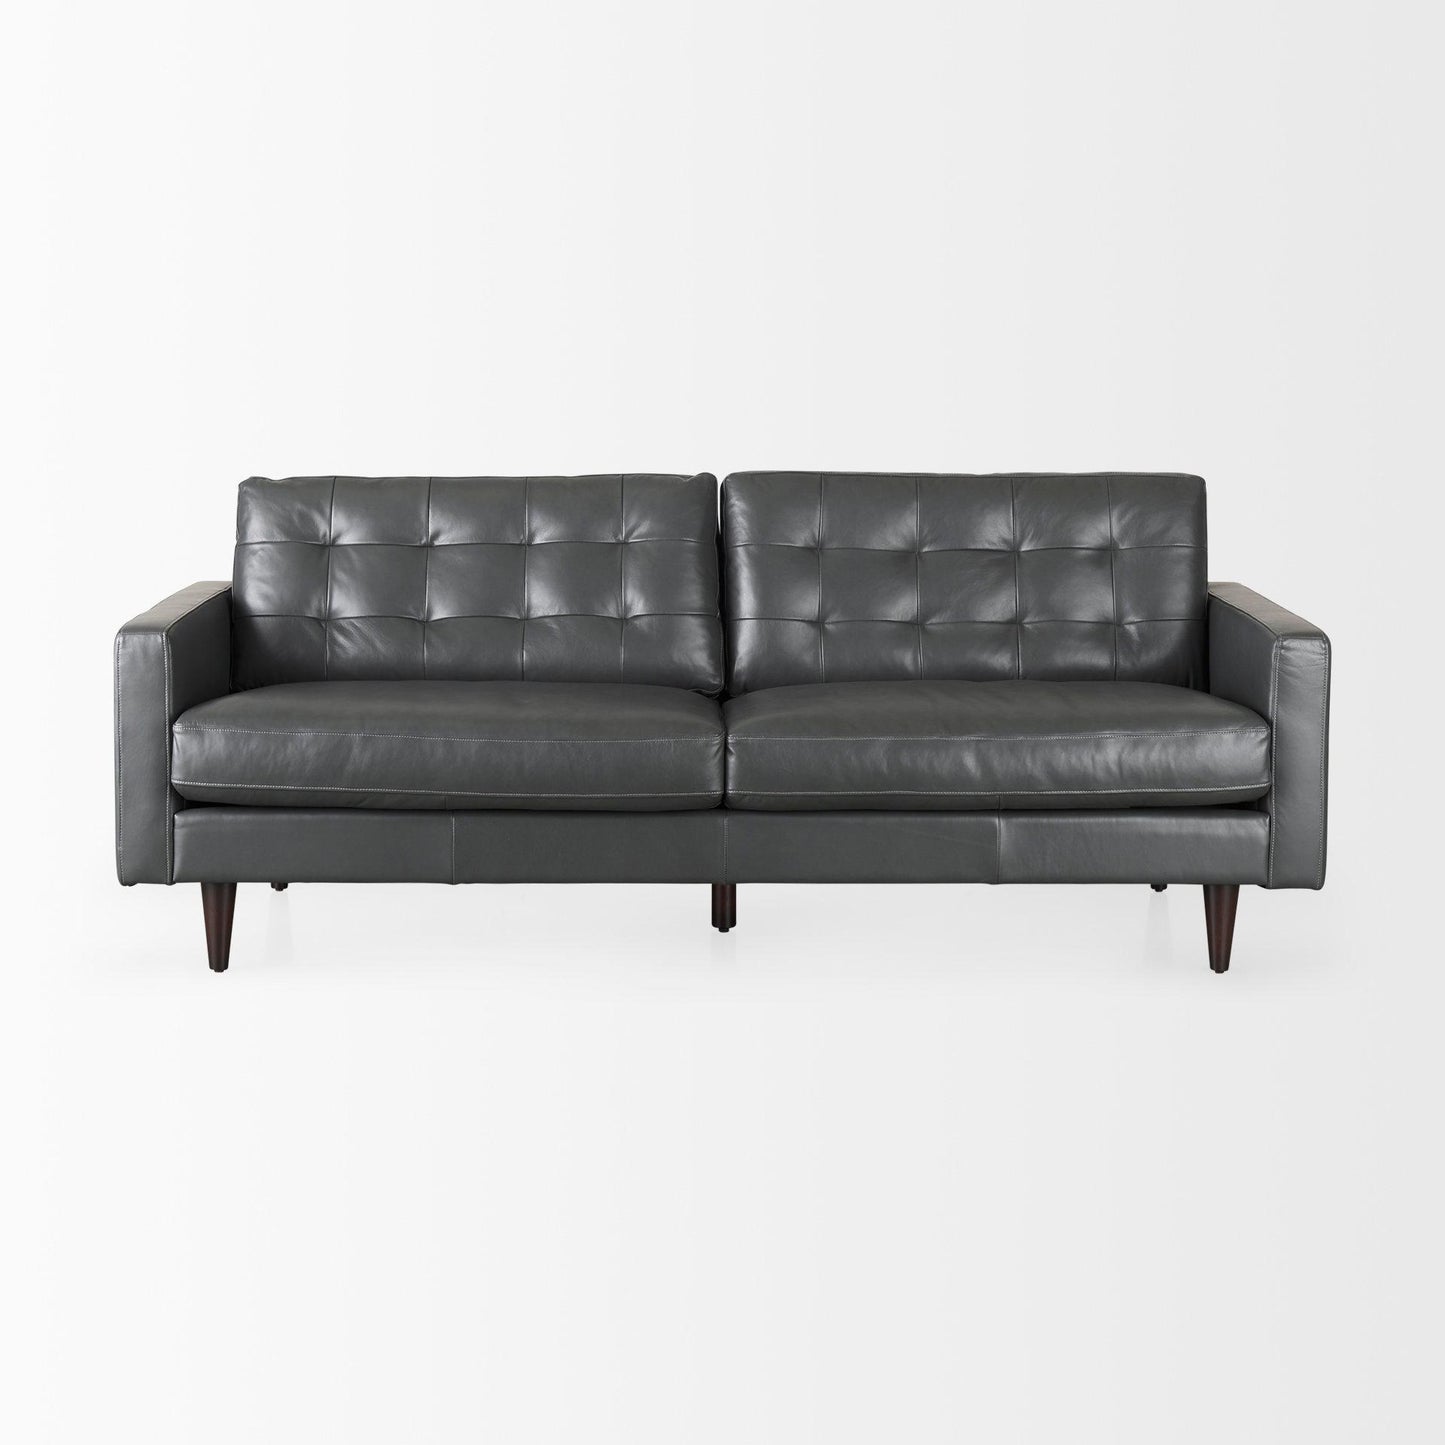 Olaf 88.0L x 38.0W x 35.0H Grey Leather Sofa